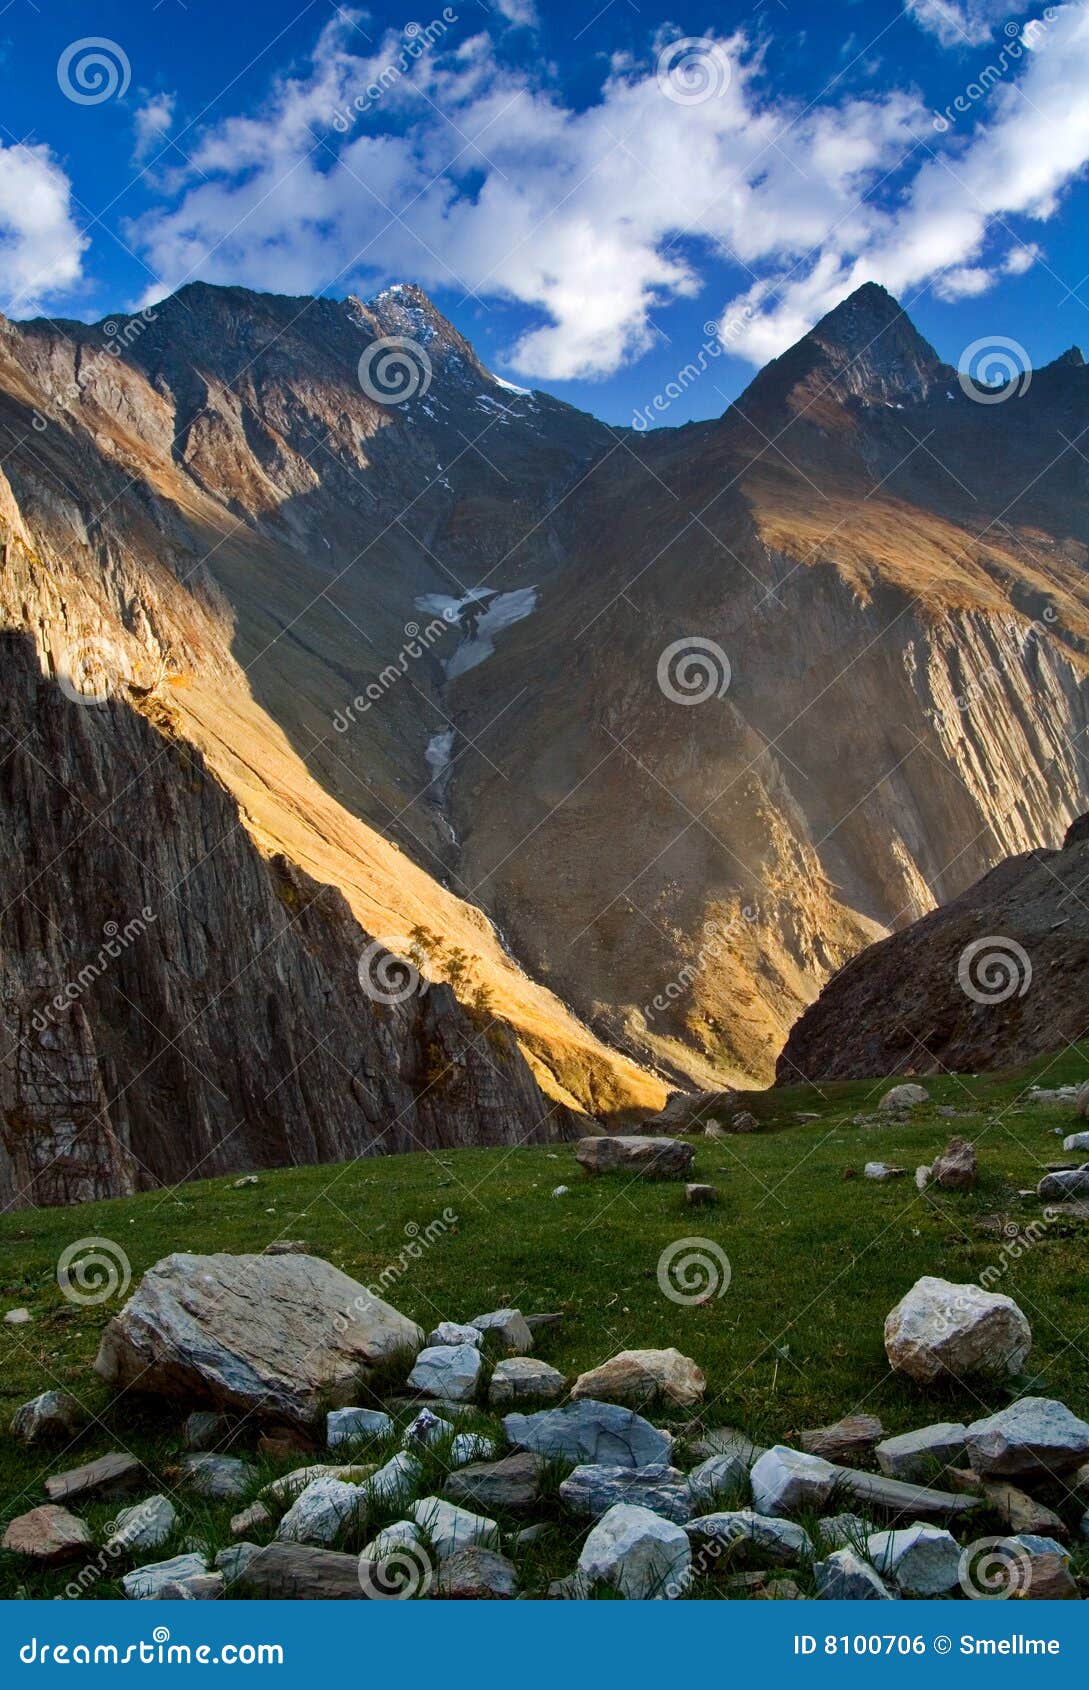 himalaya valley